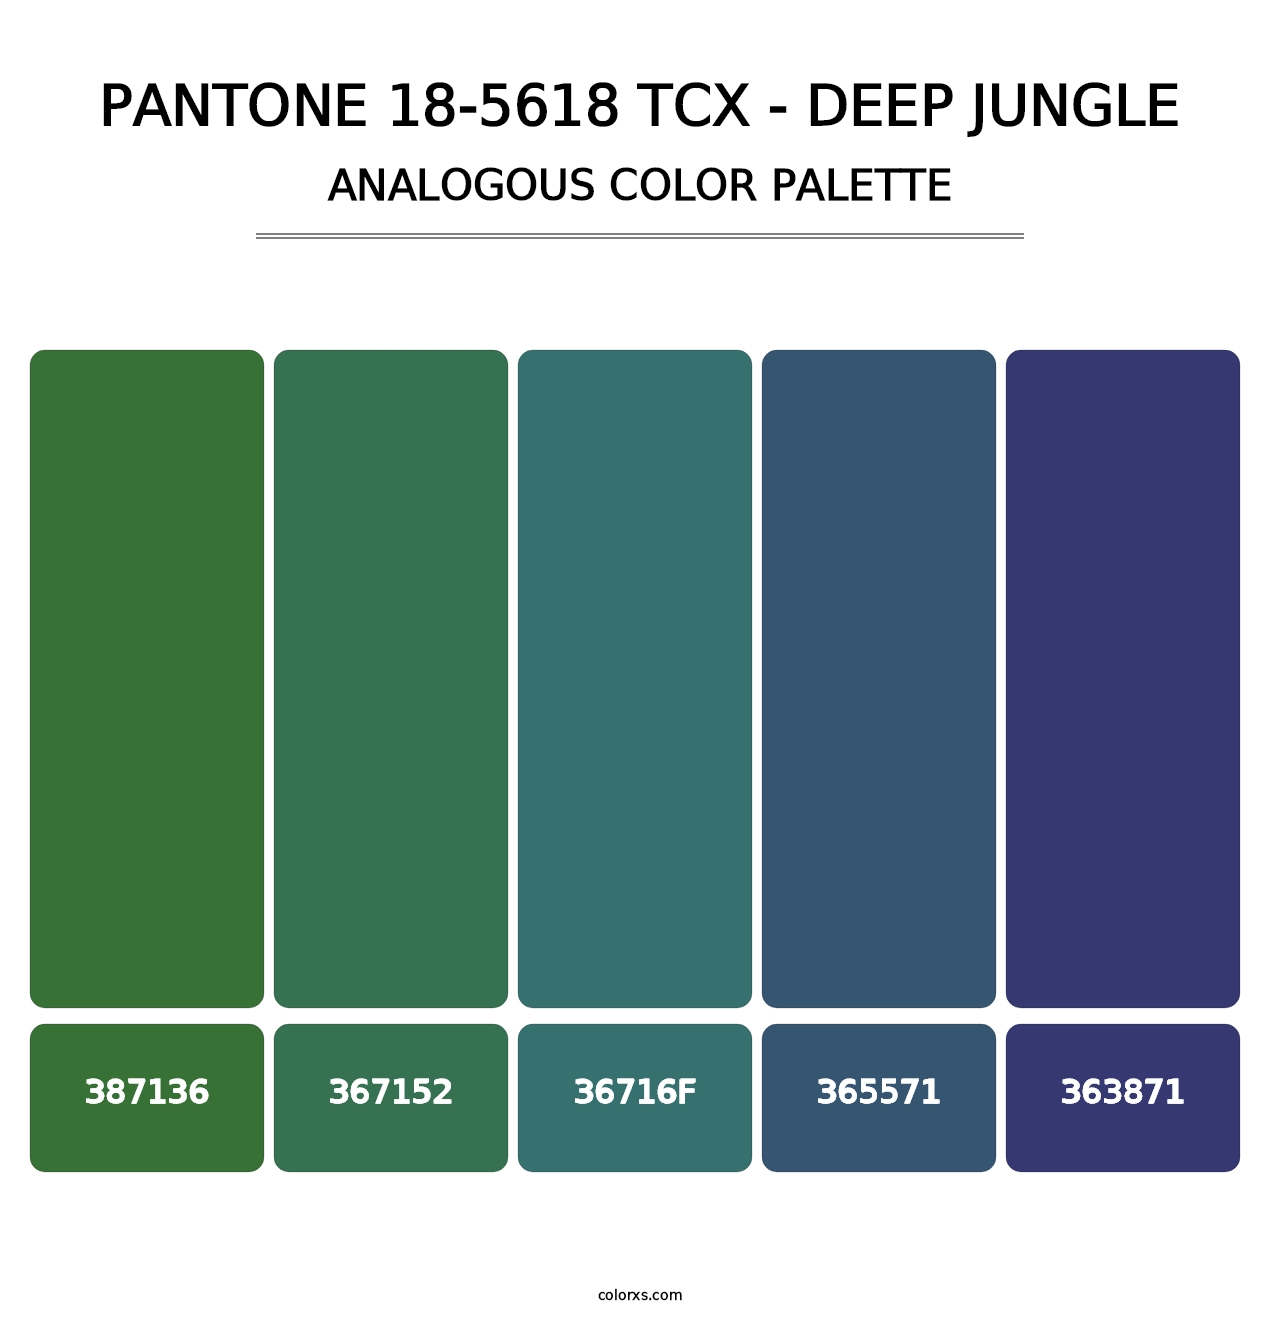 PANTONE 18-5618 TCX - Deep Jungle - Analogous Color Palette